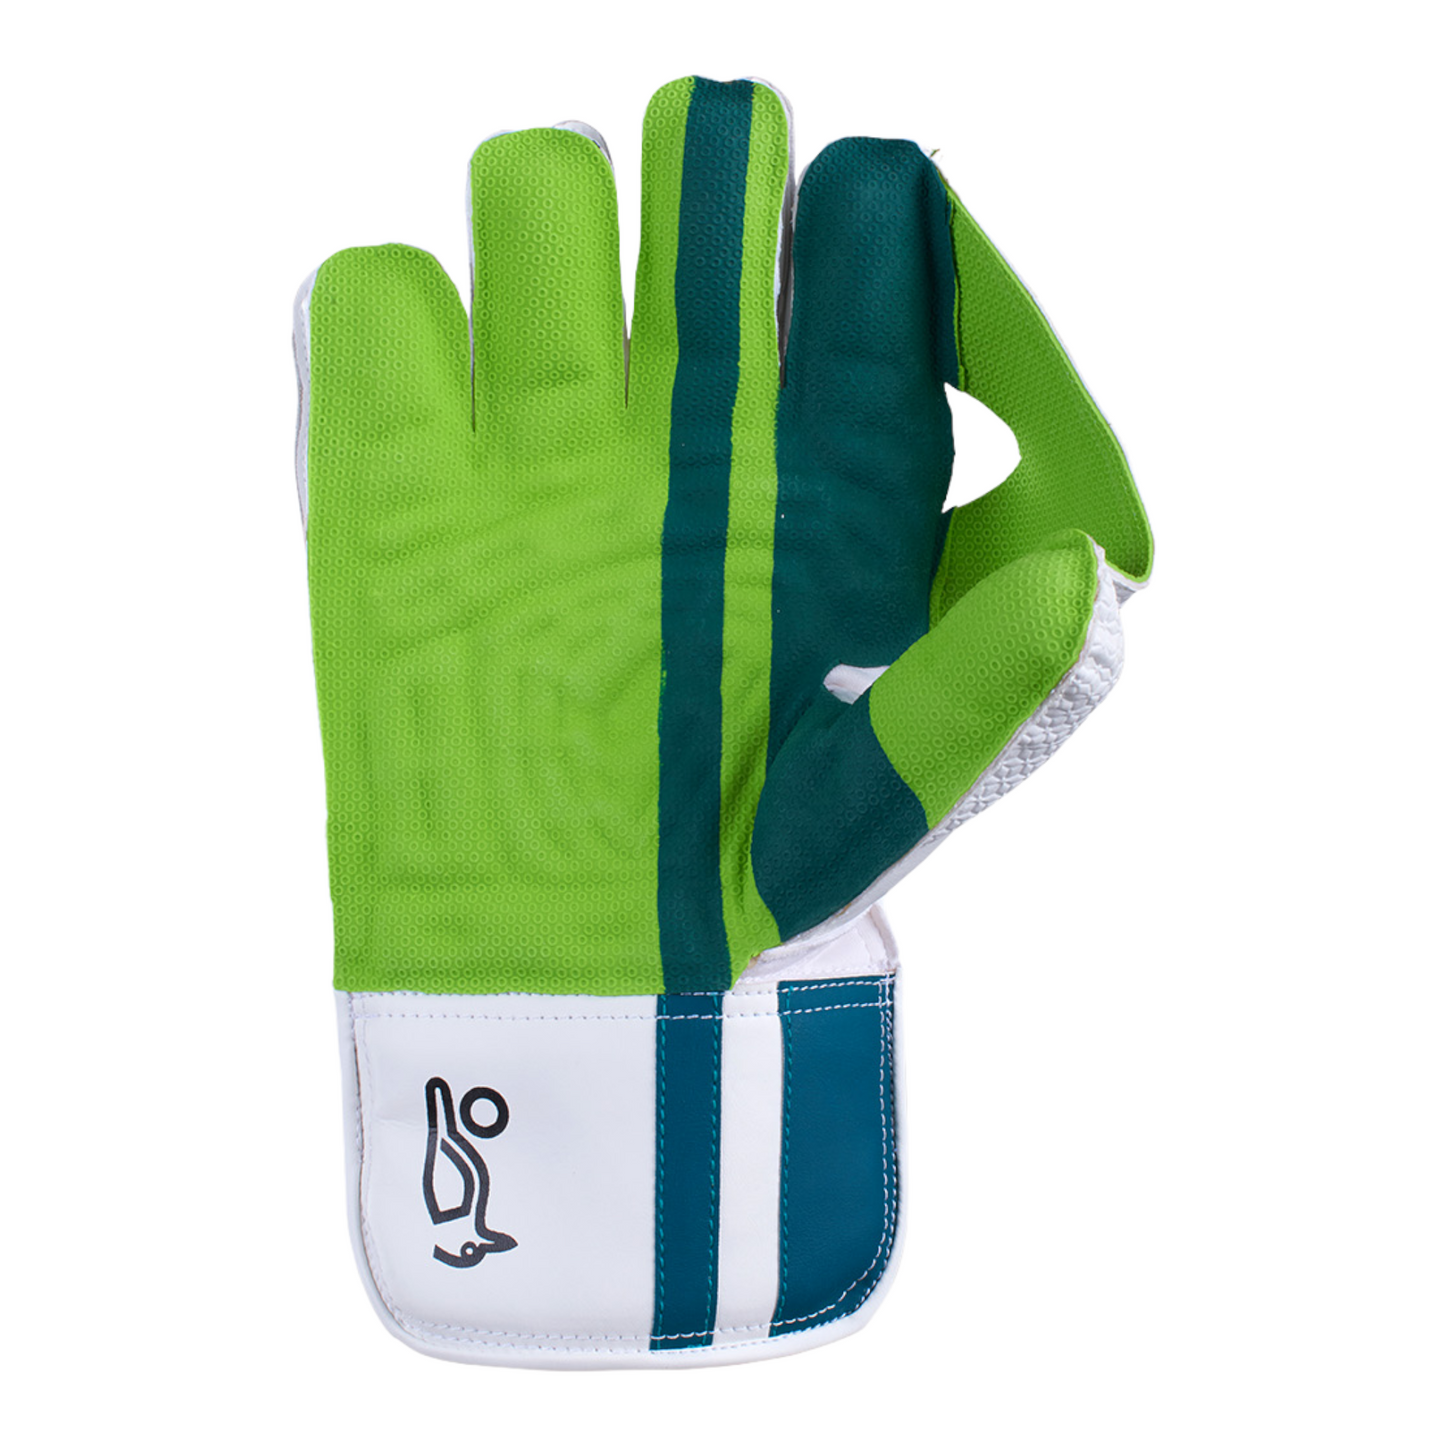 Kookaburra LC2.0 Wicket Keeping Glove